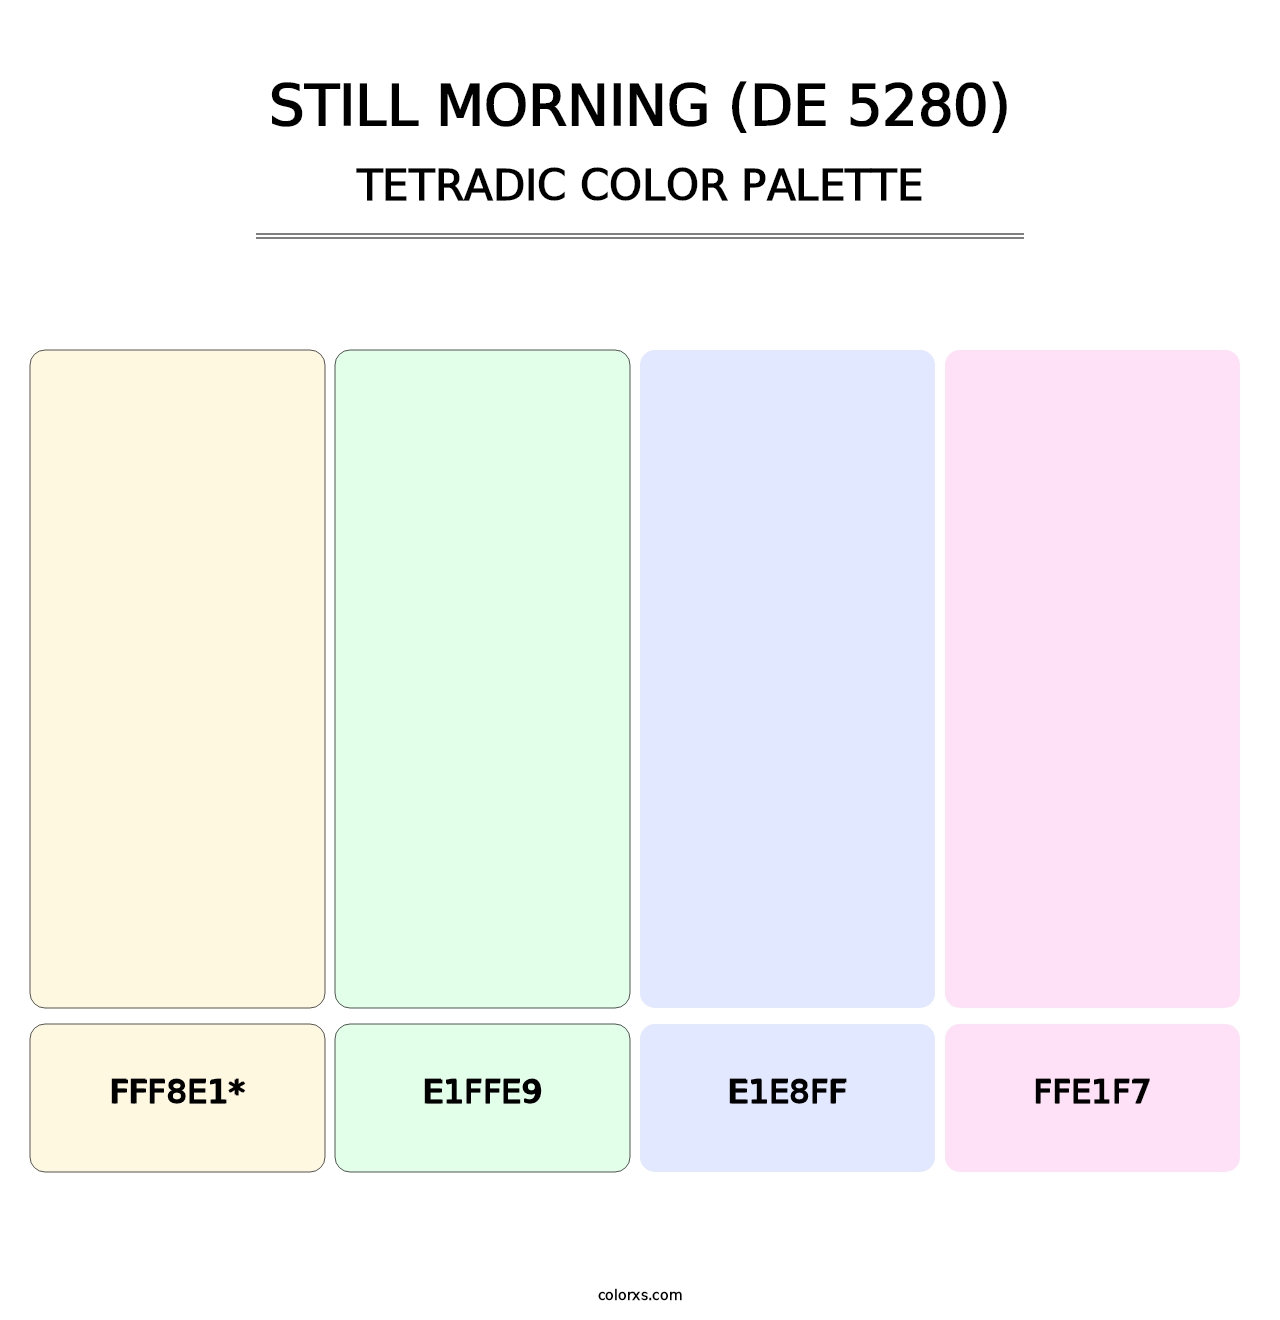 Still Morning (DE 5280) - Tetradic Color Palette